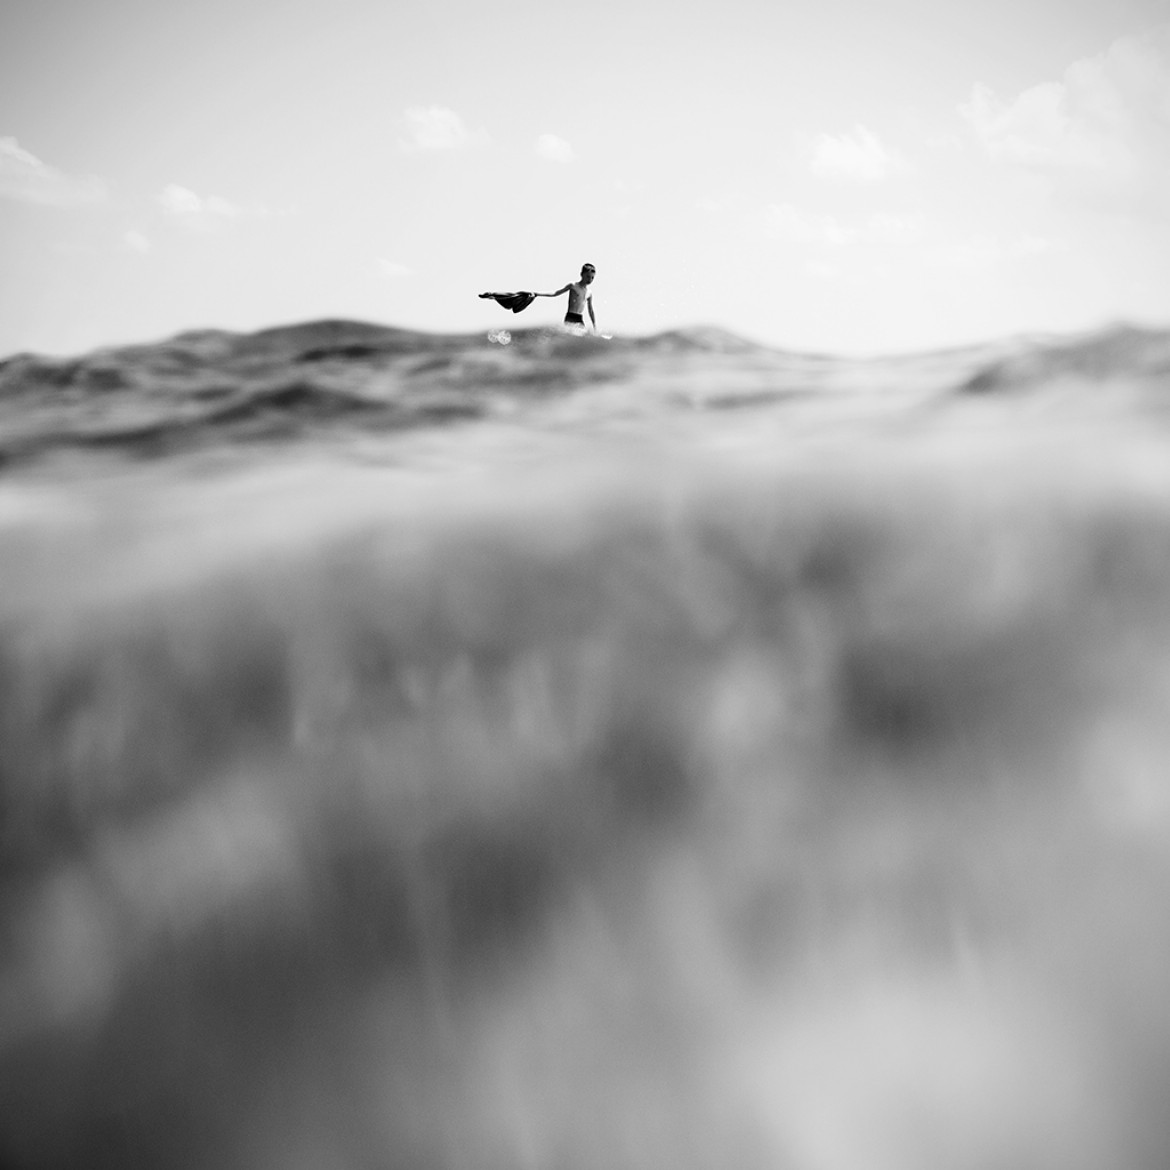 fot. Elwira Kruszelnicka, "Whisper of Waves", wyróżnienie w kategorii Fine Art